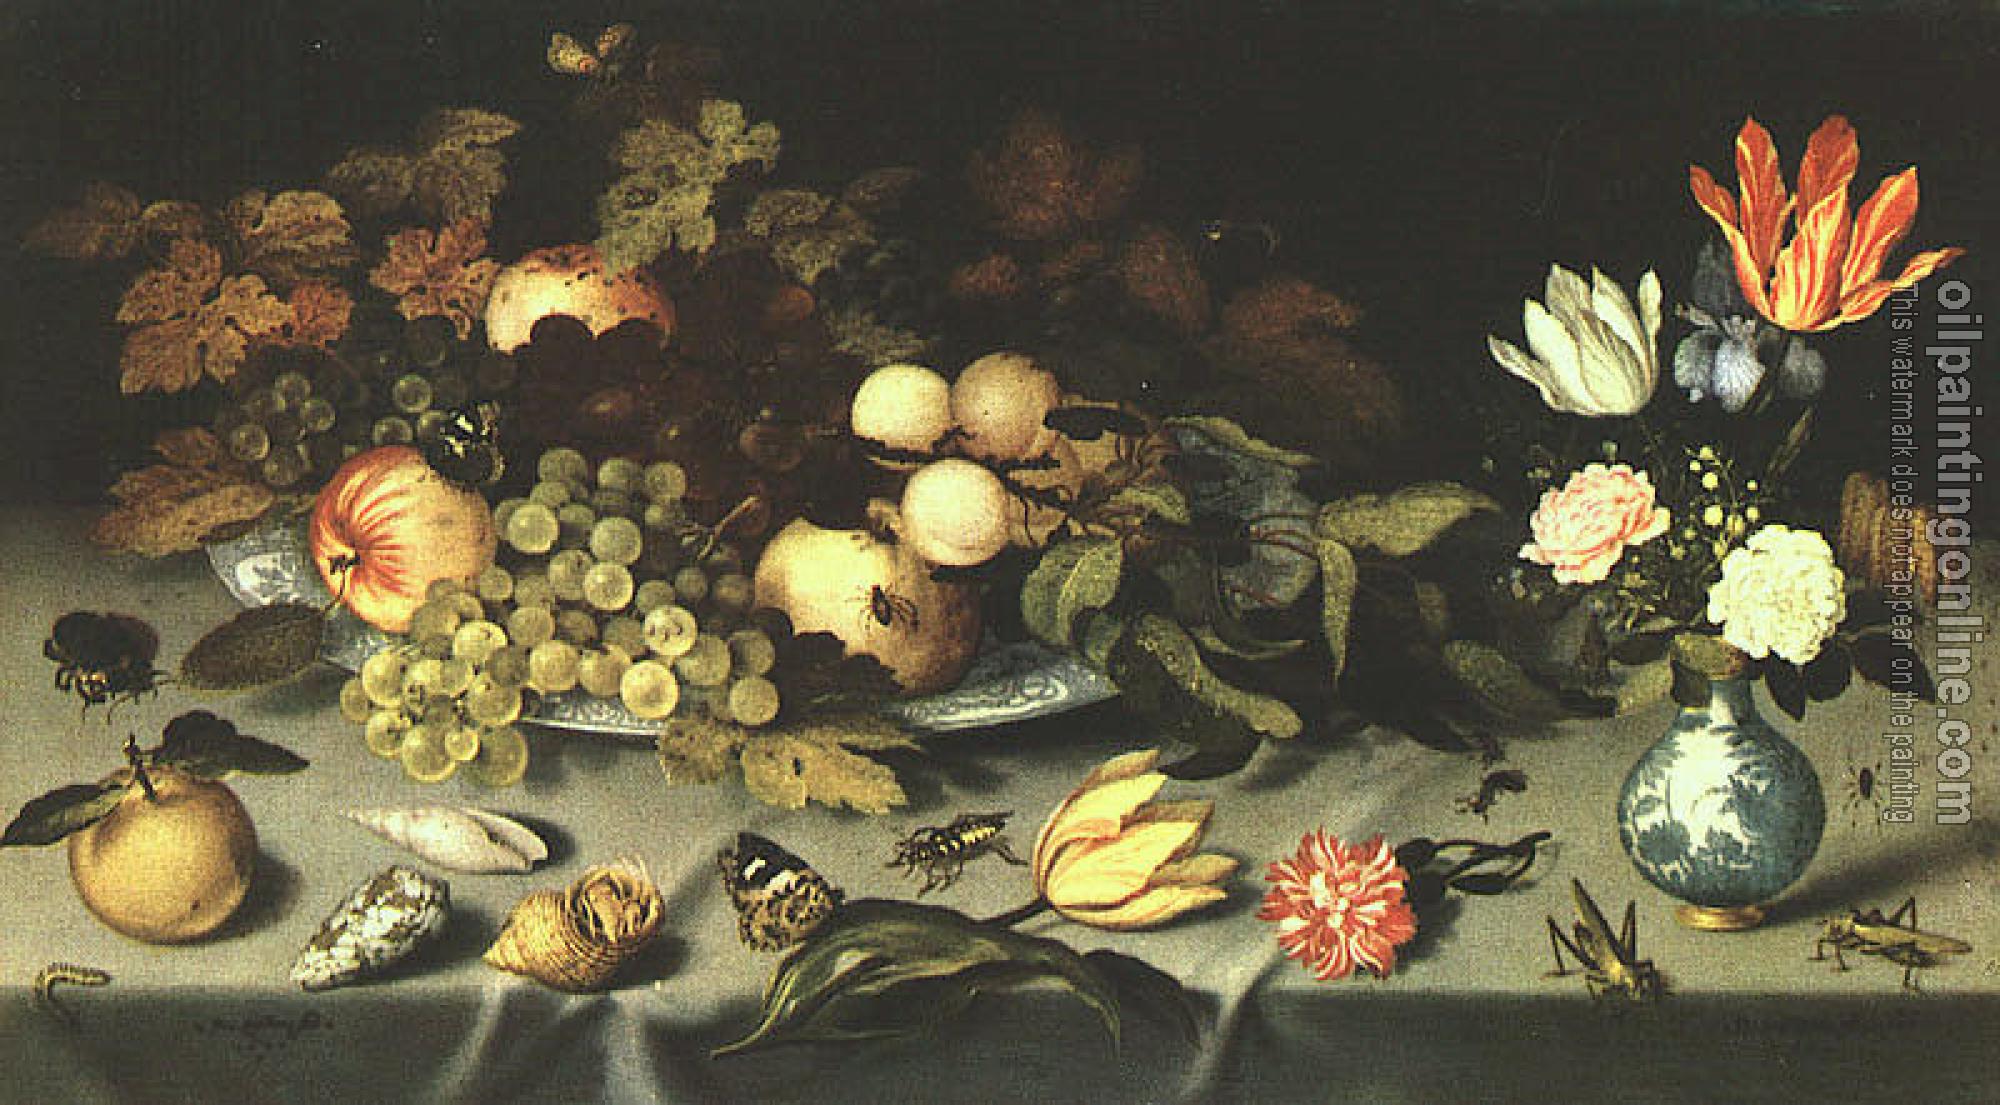 Ast, Balthasar van der - Graphic Flowers and Fruit